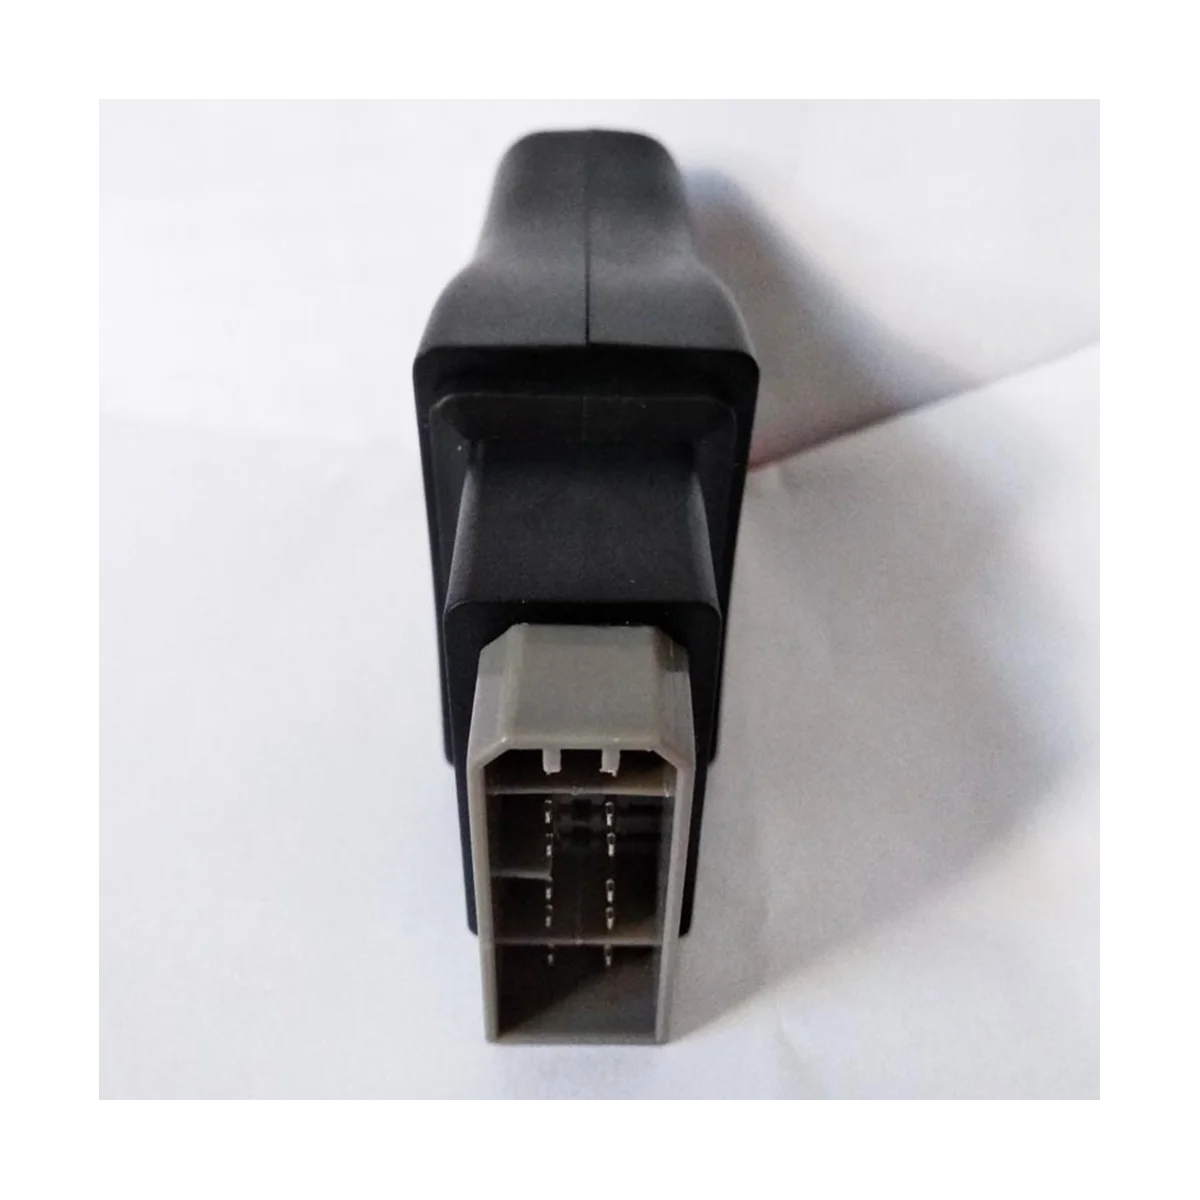 14 פינים עבור ניסן התייעץ עם ממשק 14Pin USB רכב אבחון תקלות OBD קוד כבל OBD כלי כדי OBD2 16Pin מחבר - 1